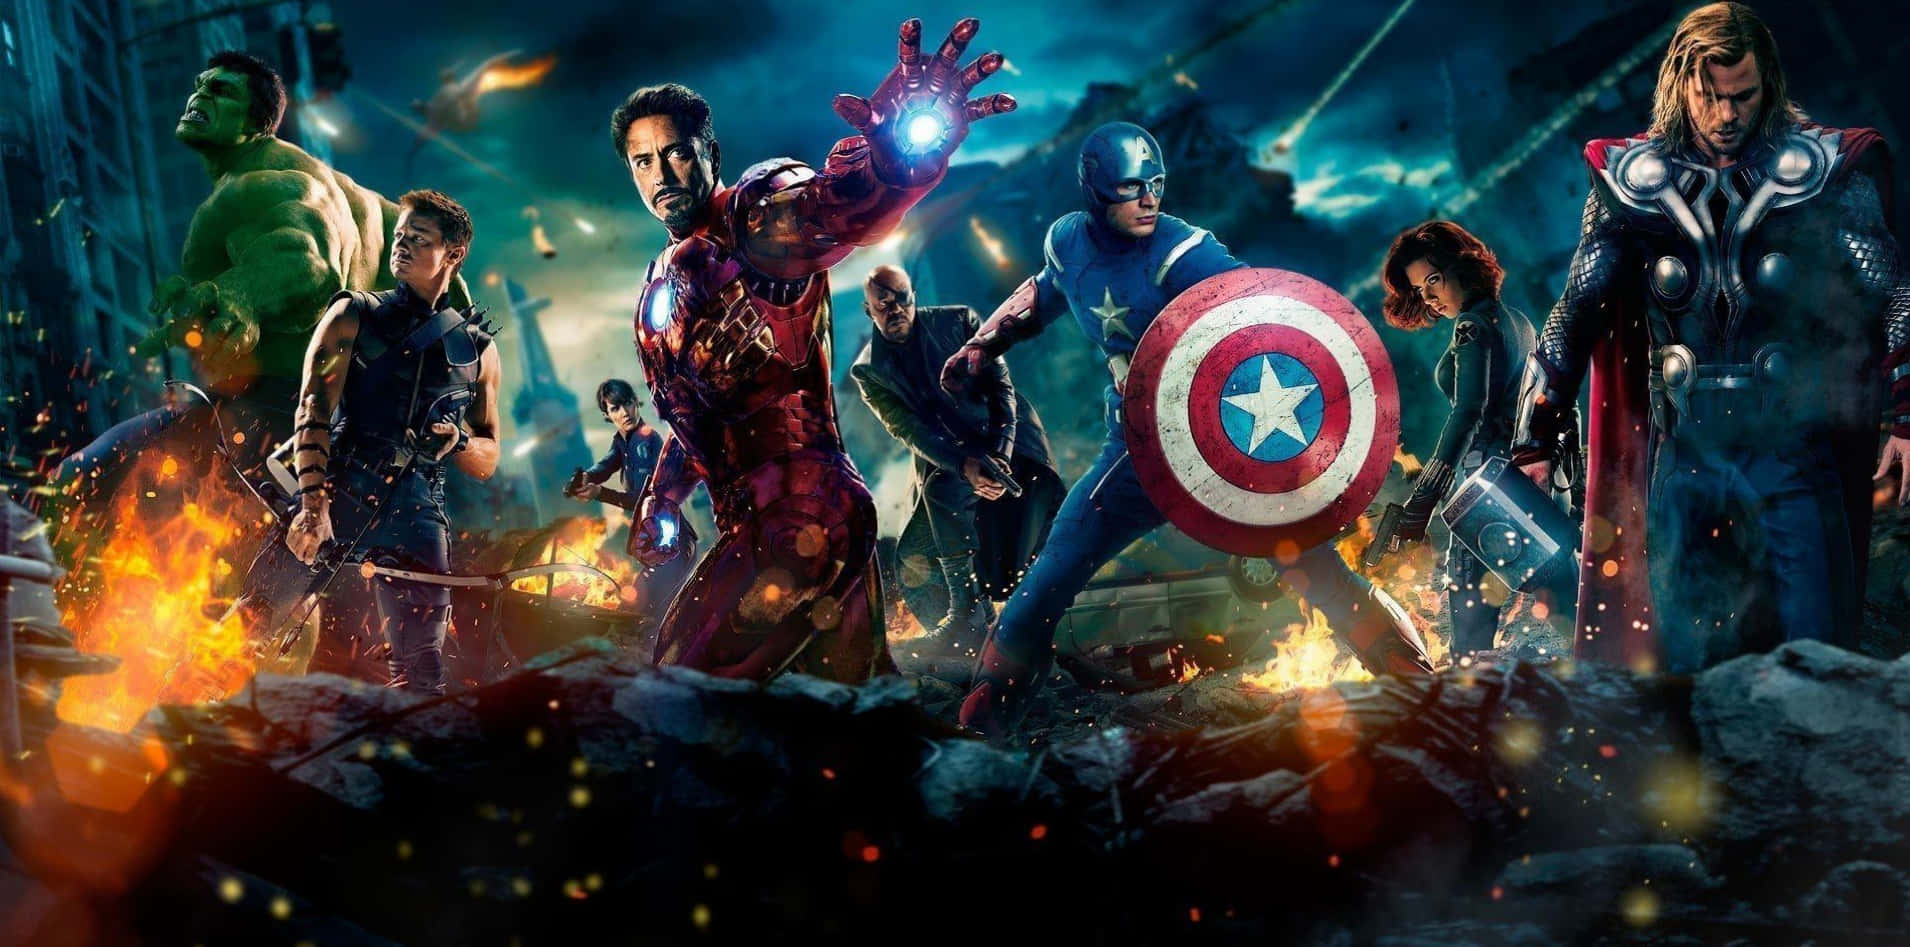 Action Marvel Avengers In New York Wallpaper